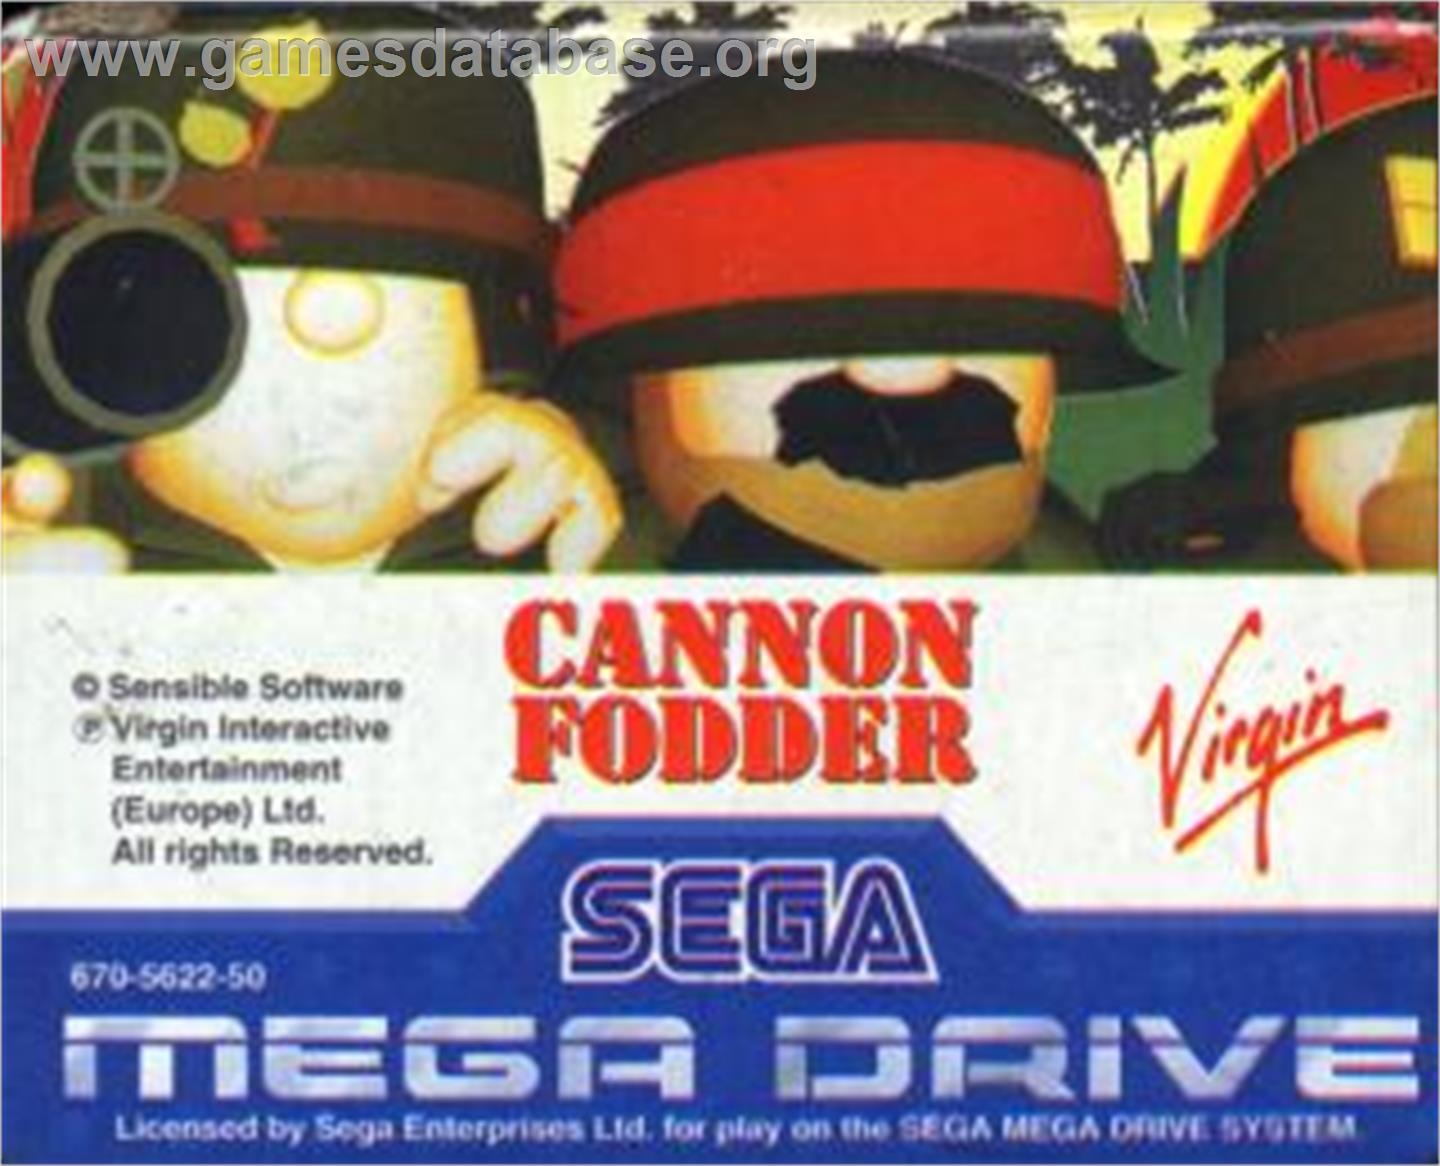 Cannon Fodder - Sega Nomad - Artwork - Cartridge